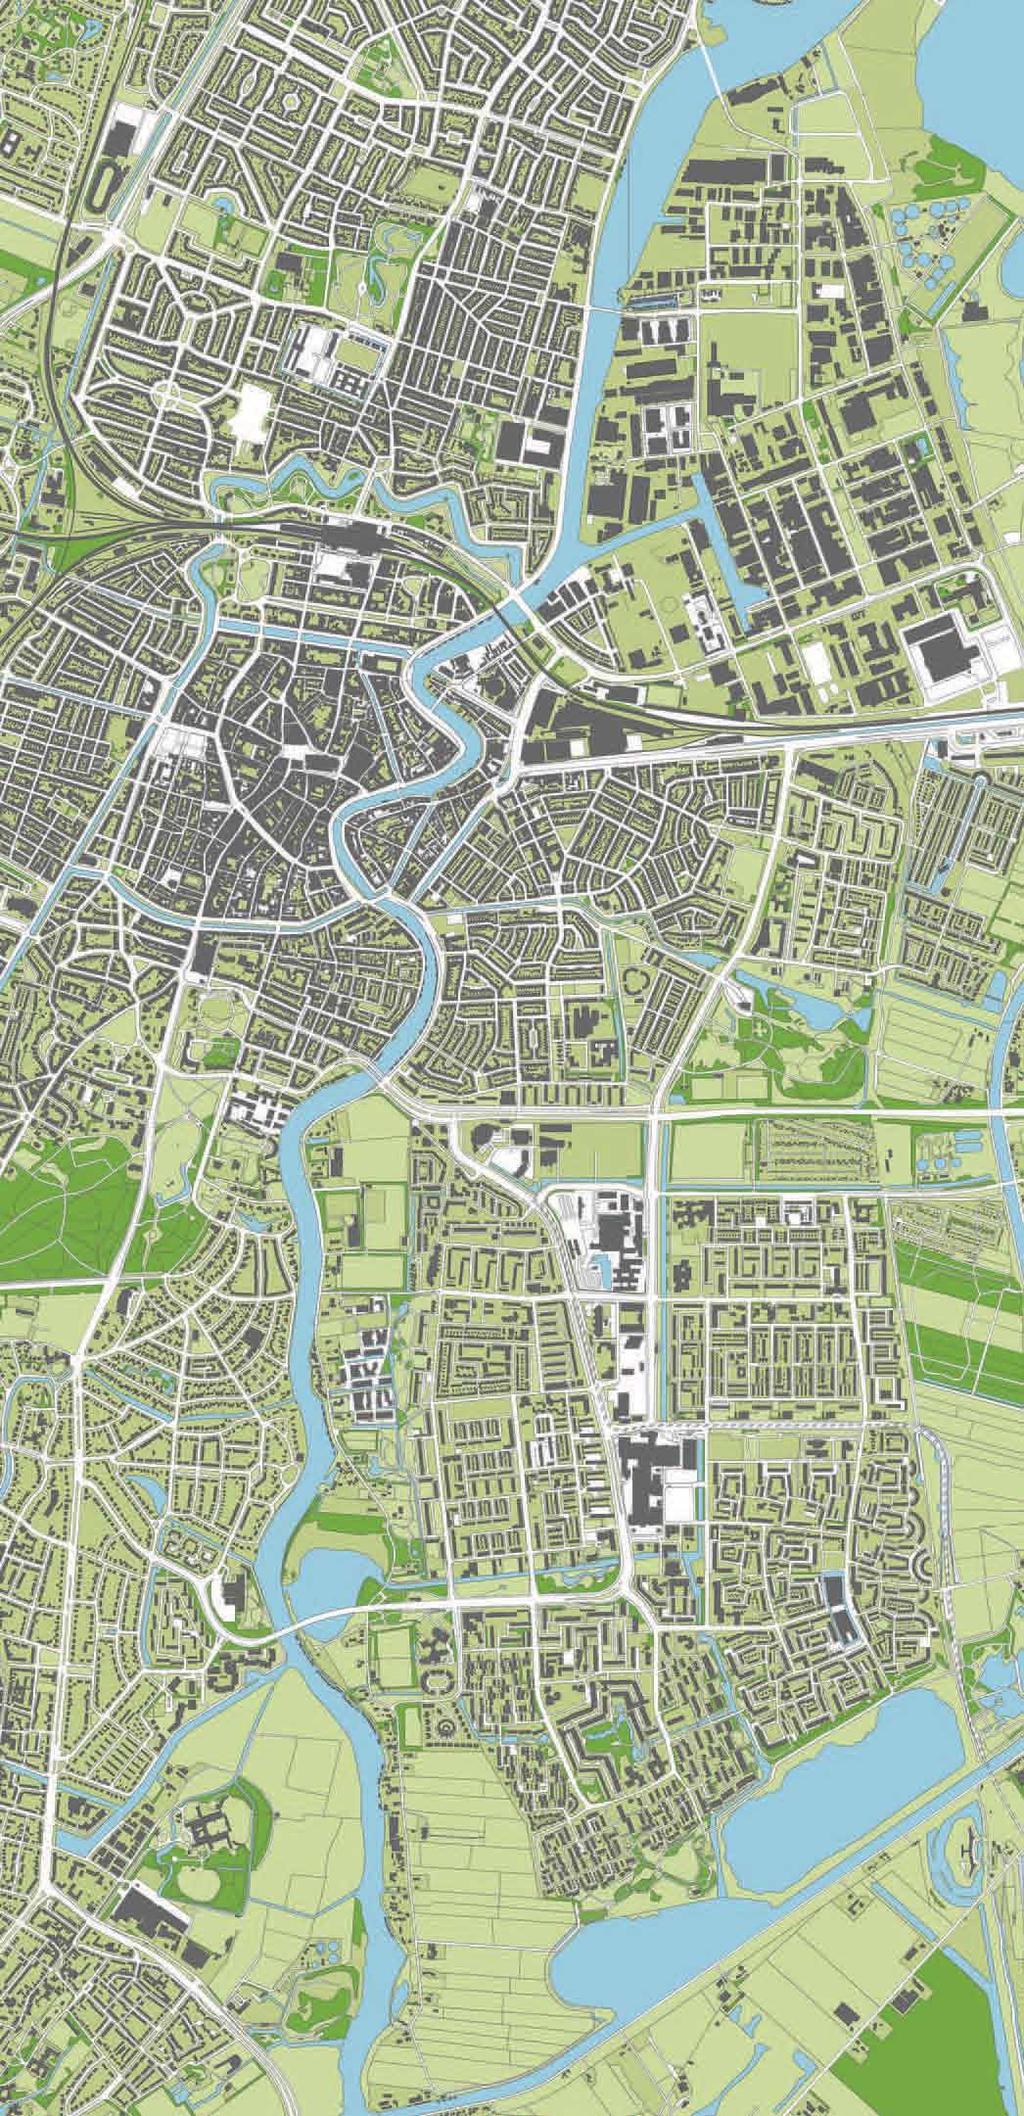 Beschrijving De gemeente Haarlem verkoopt een kavel voor collectief particulier opdrachtgeverschap (CPO). De kavel ligt op de hoek van de Engelandlaan en de Stockholmstraat.